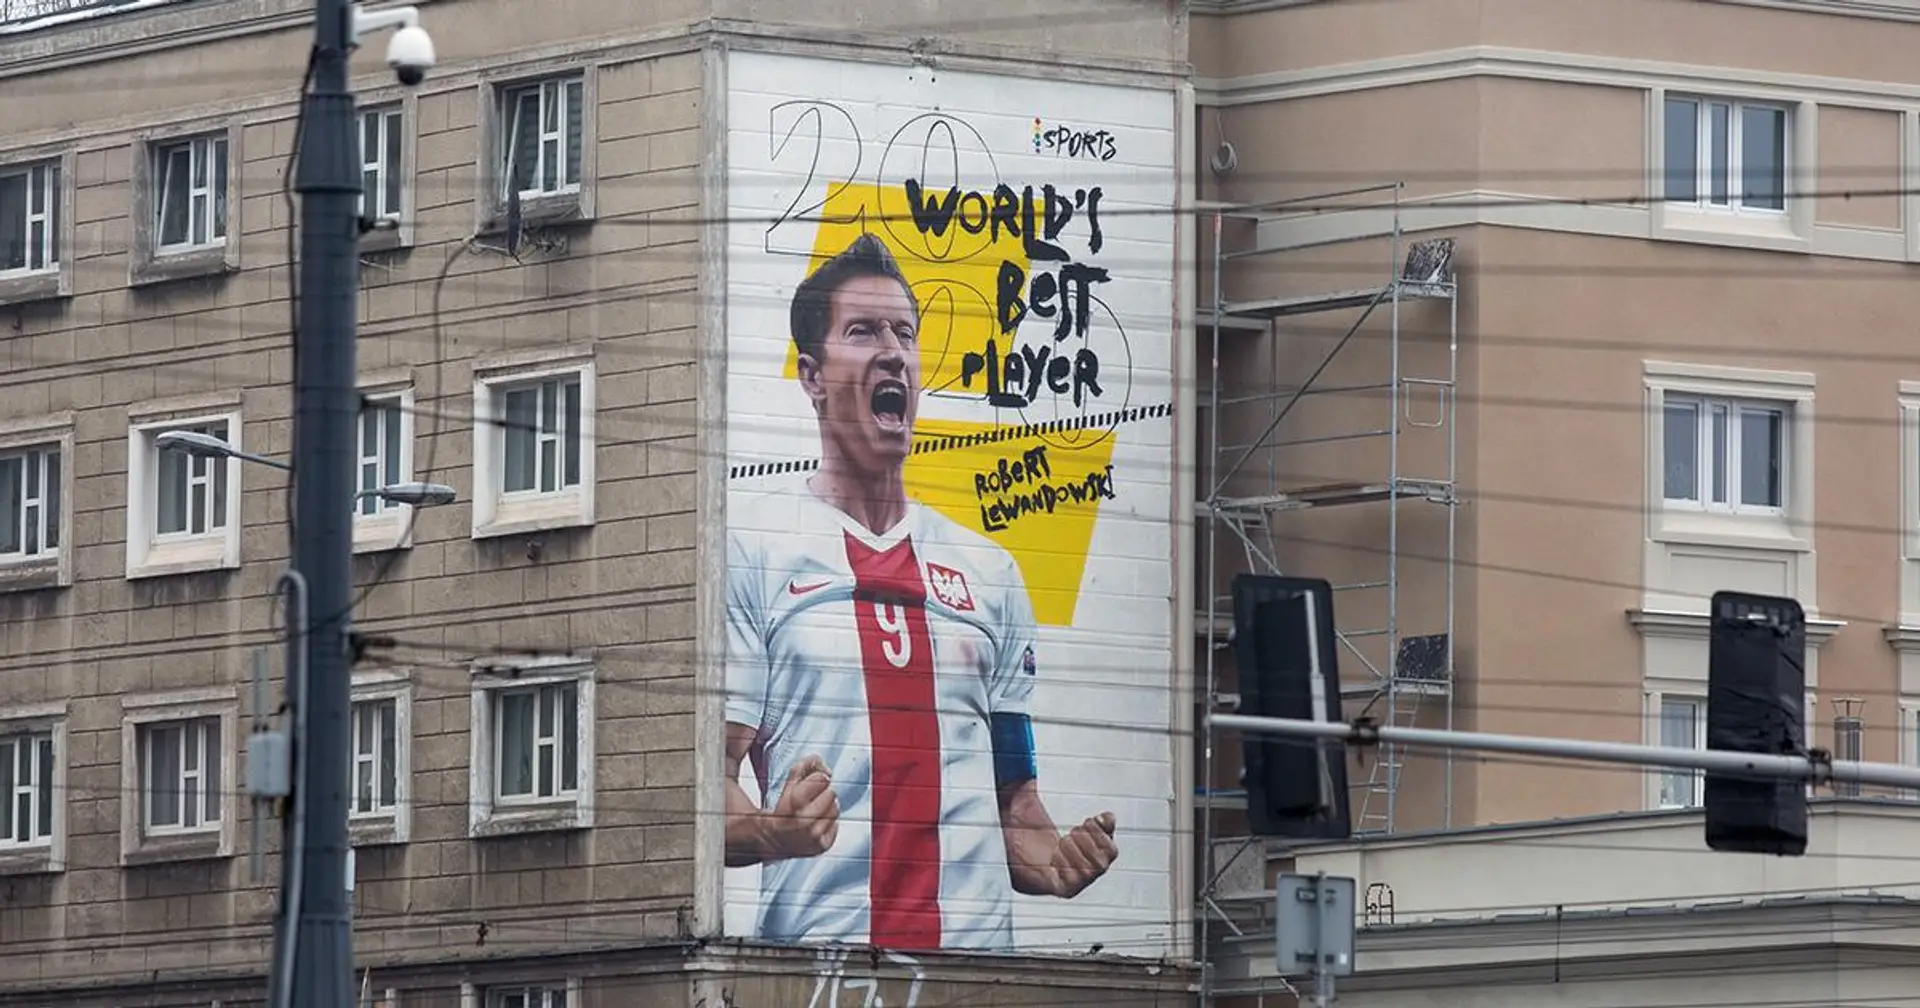 Robert Lewandowski erhielt endlich seinen Ballon d'Or-Award 2020. Das ist ein riesiges Graffiti im Zentrum von Warschau